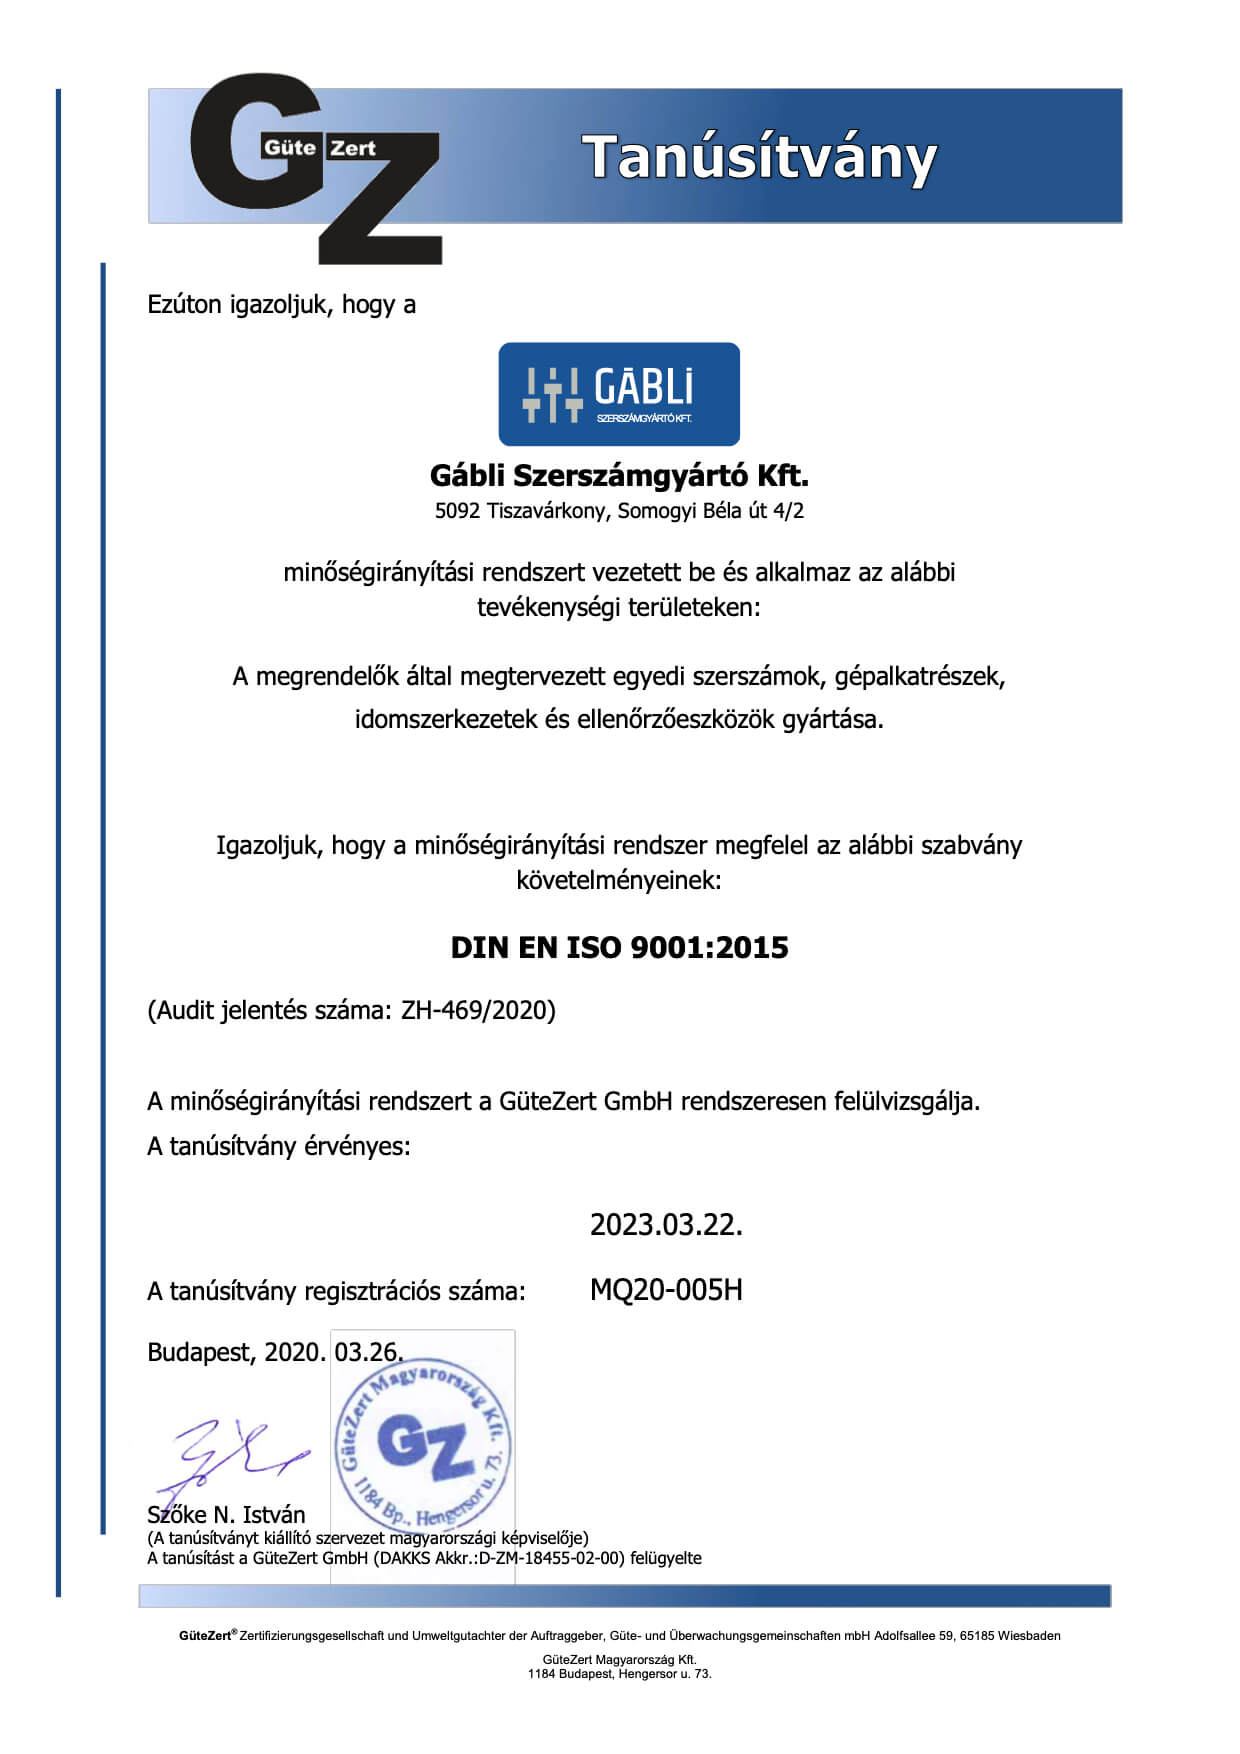 Gábli Szerszámgyártó Kft ISO minőségbztosítása